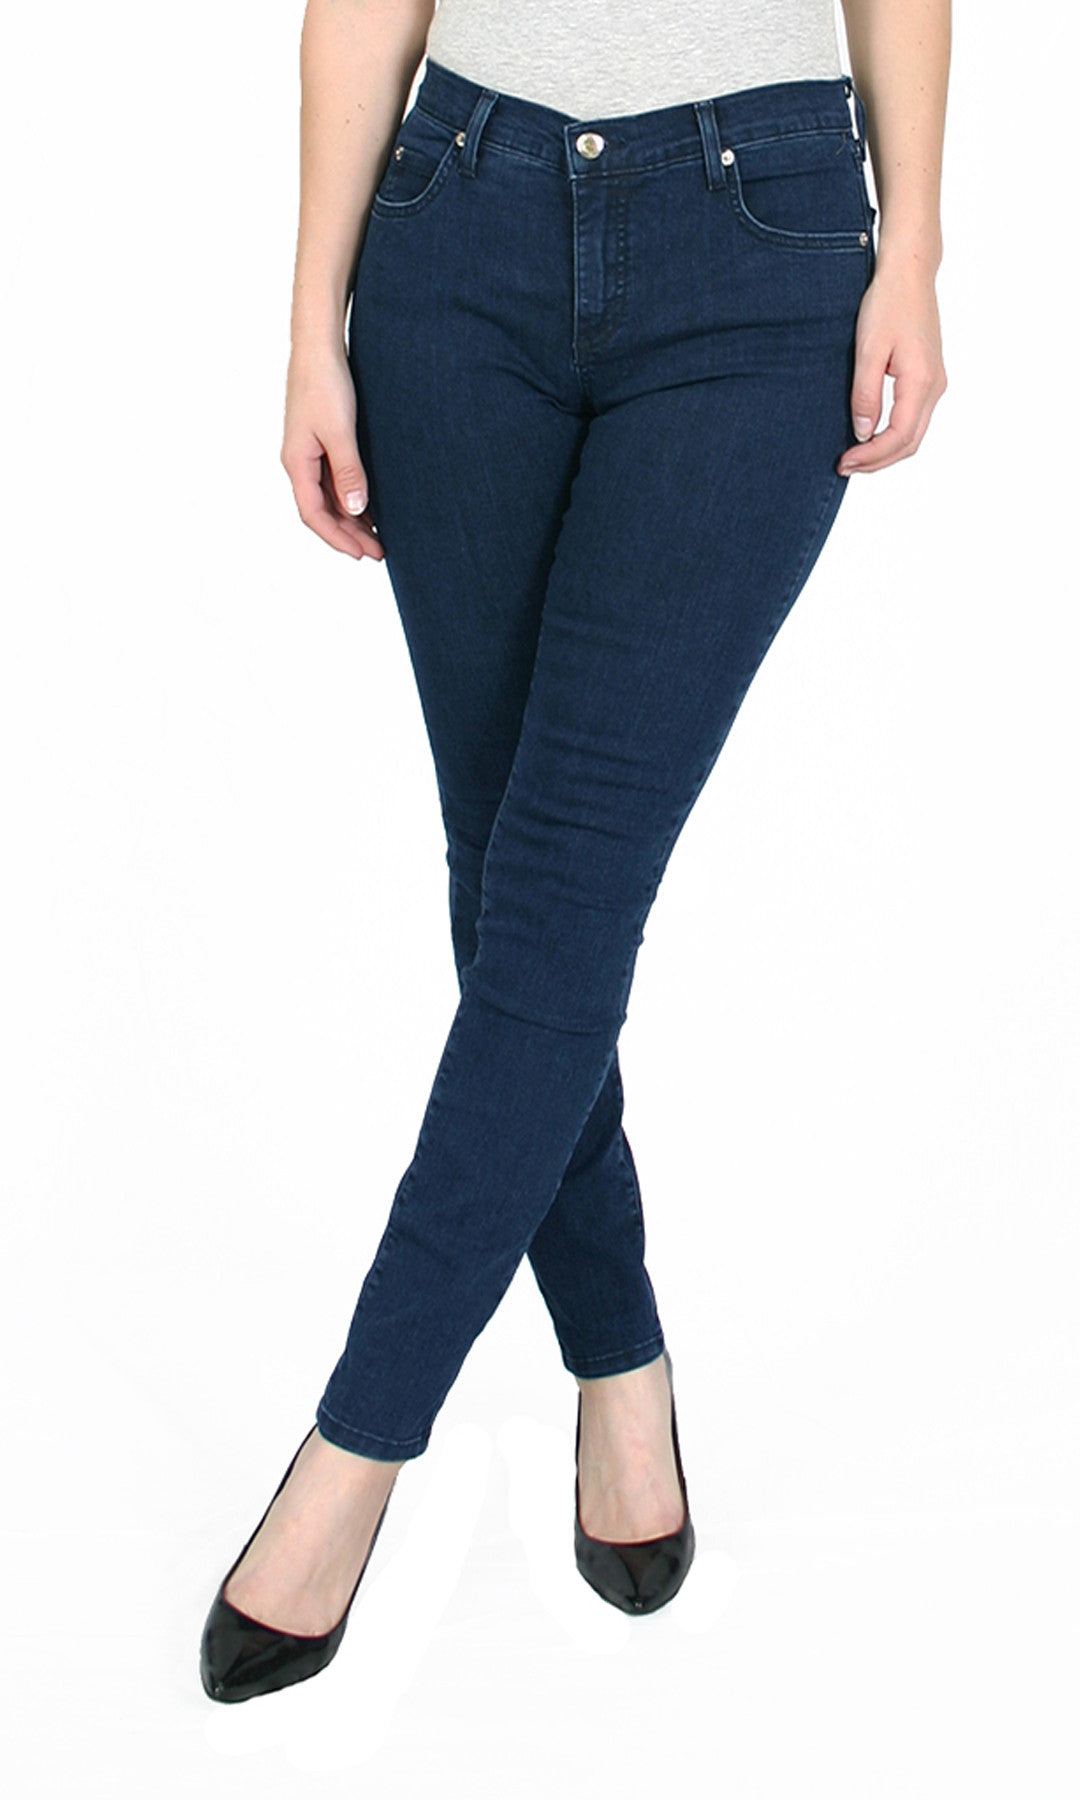 Buy Blue Plain Coloured Jeans for Women Online